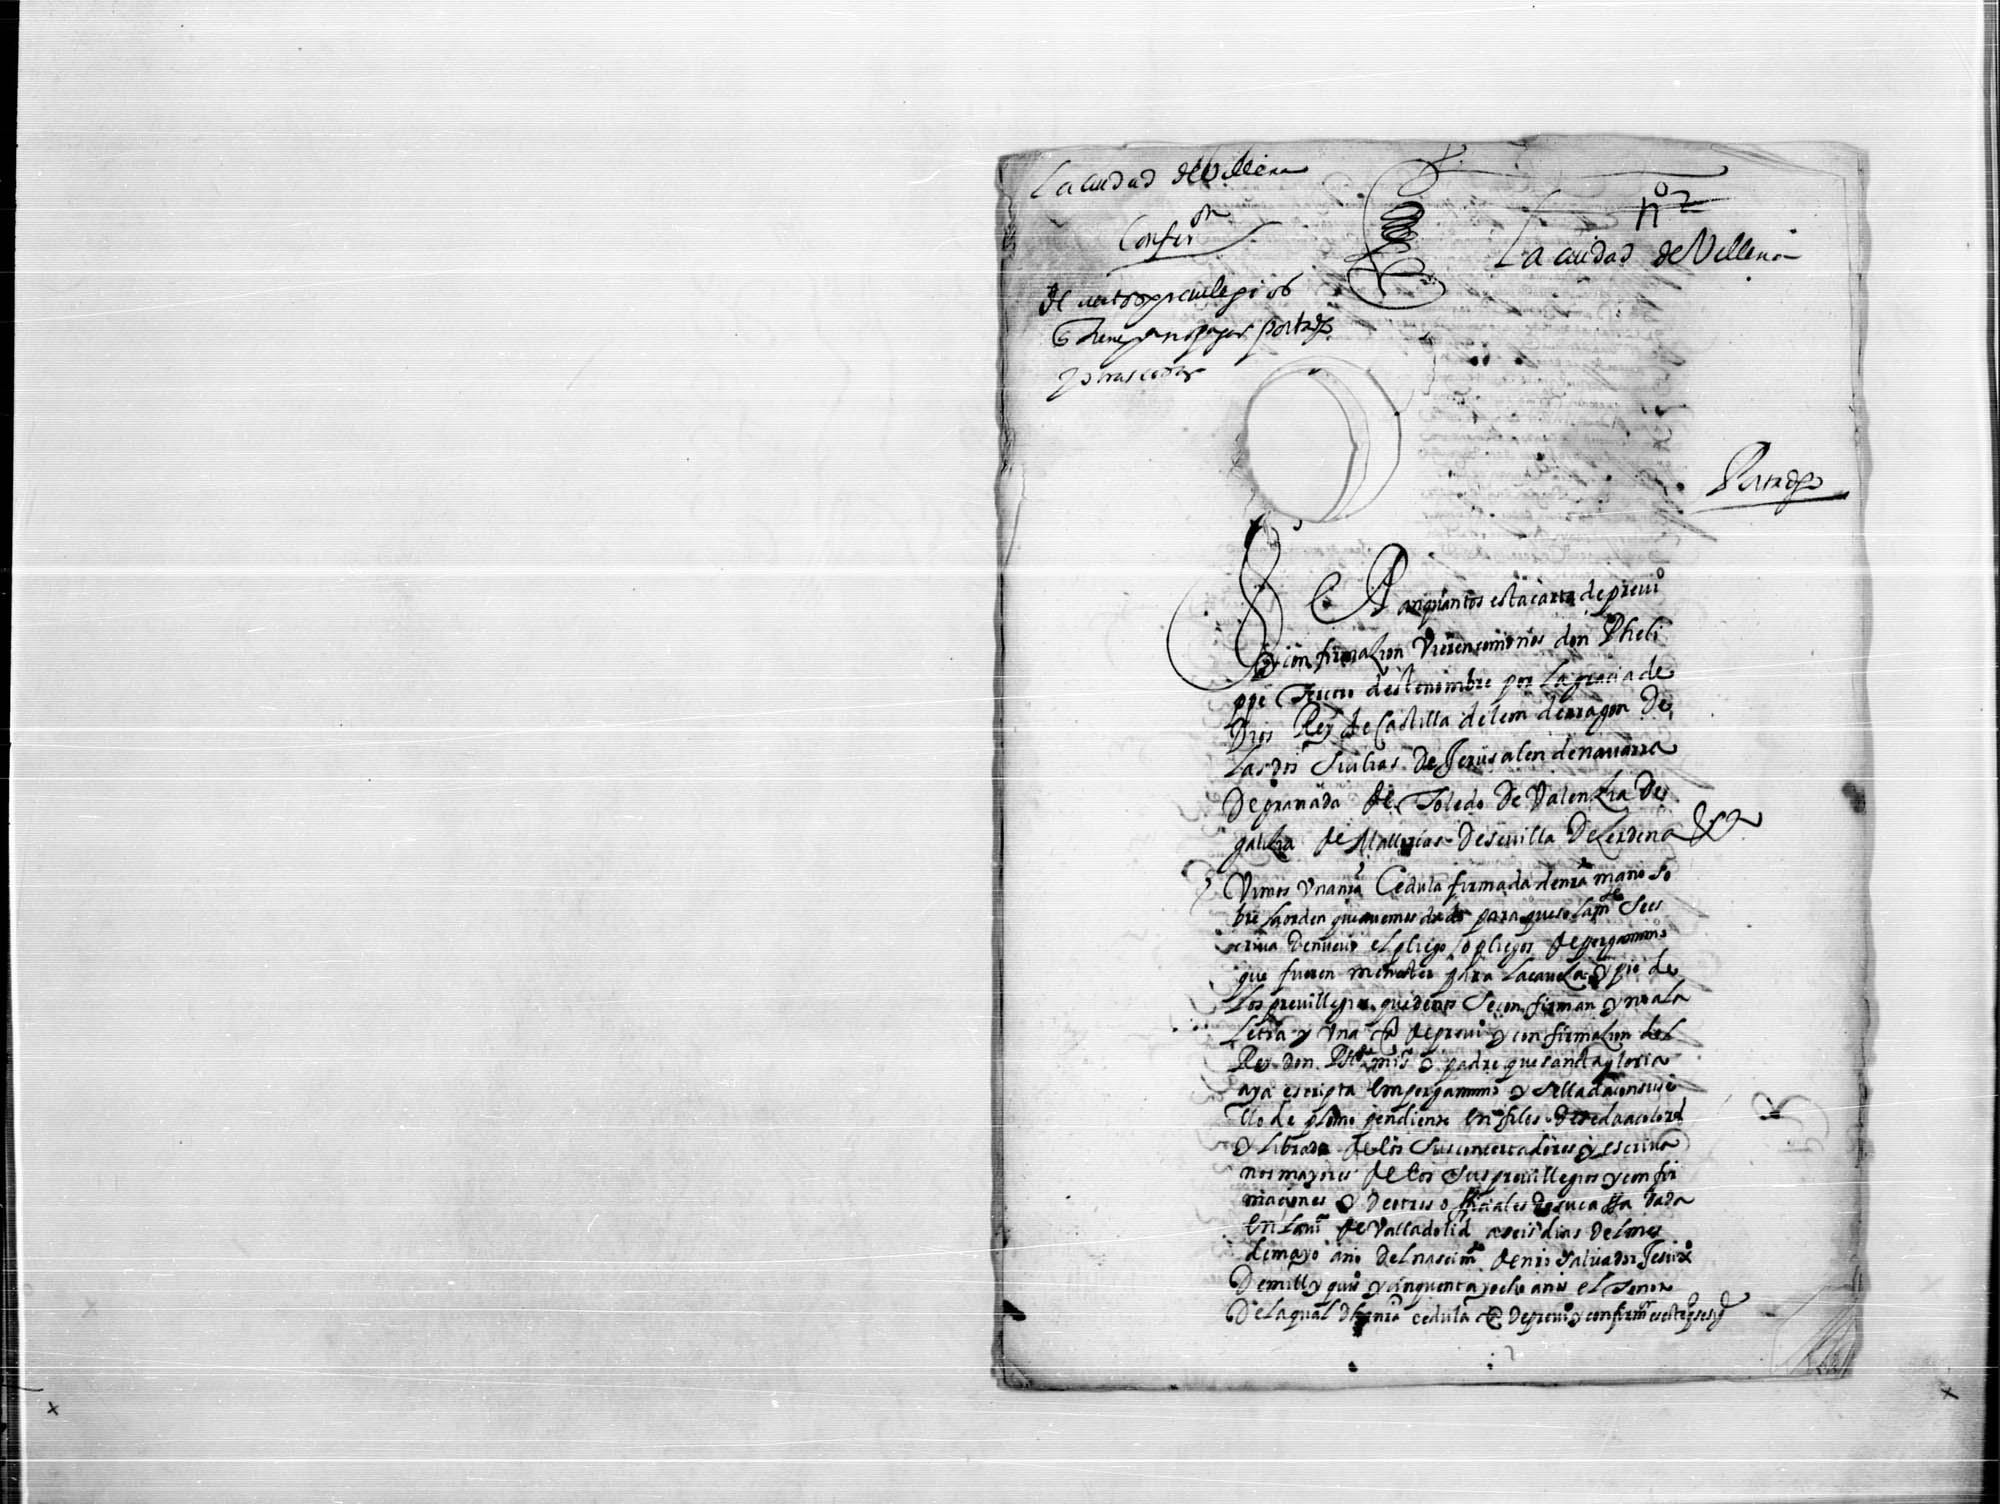 Carta de Felipe III confirmando los privilegios de Villena.
   -Similar al doc. 37.